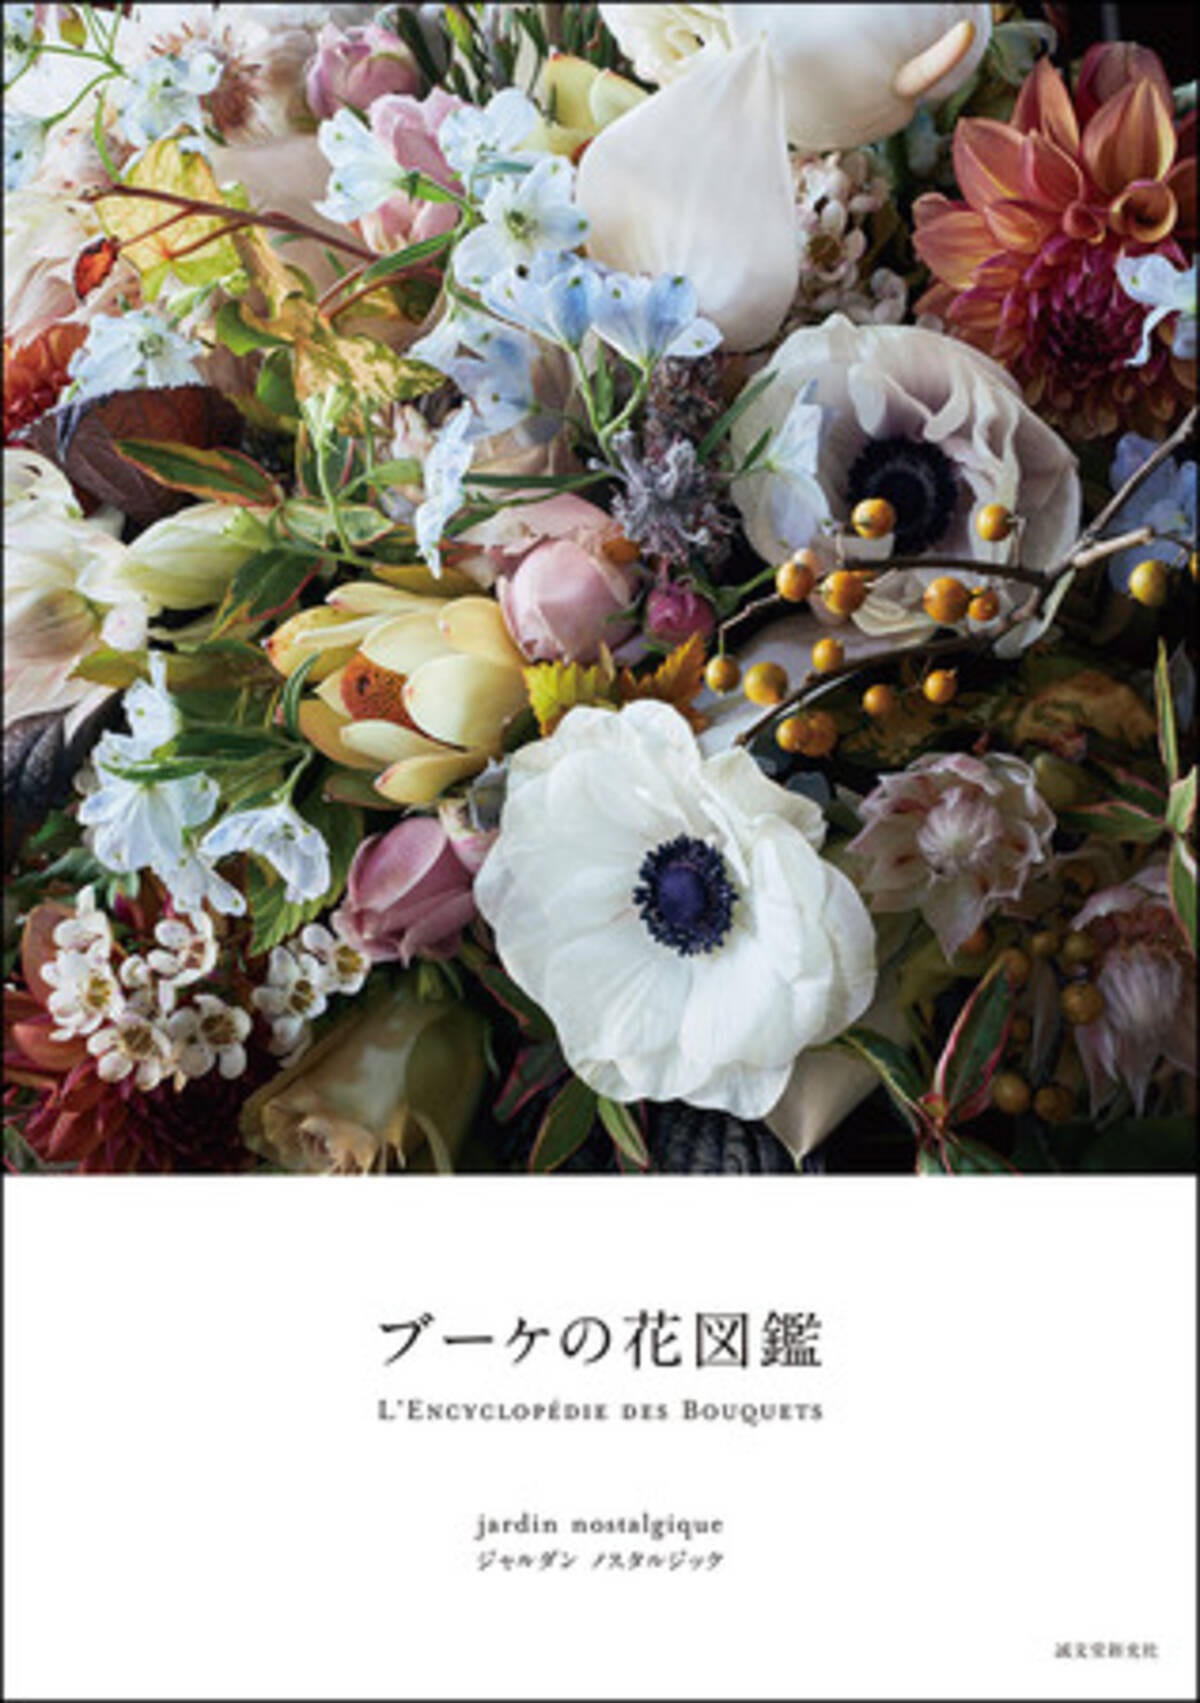 写真集としても楽しめる美しい花図鑑 迫力のある花束の写真が満載の一冊 21年7月29日 エキサイトニュース